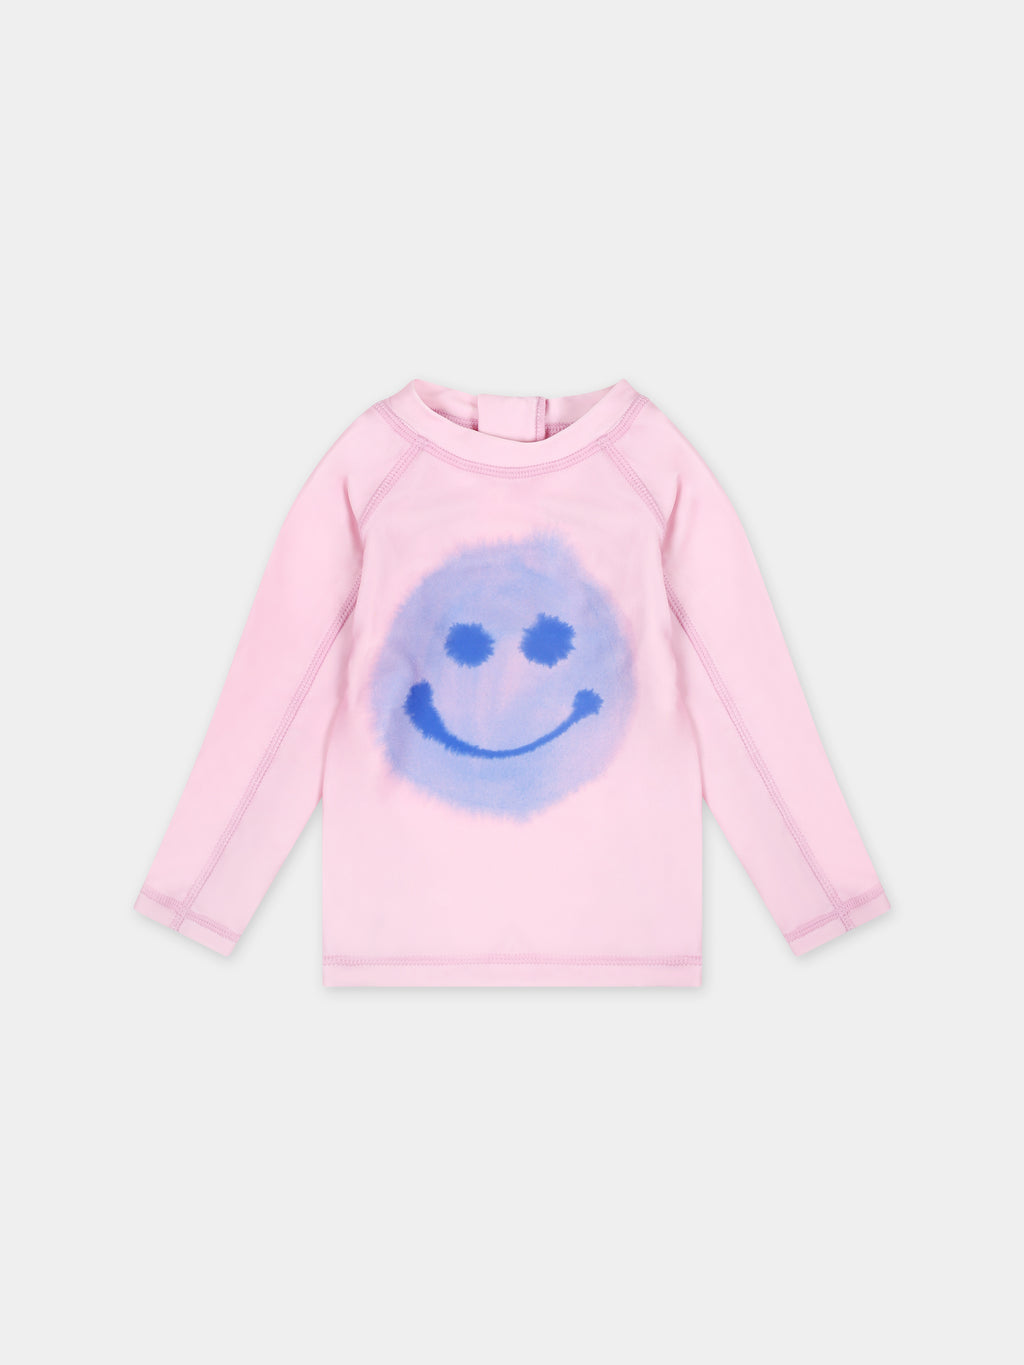 T-shirt rose pour bébé fille avec smiley